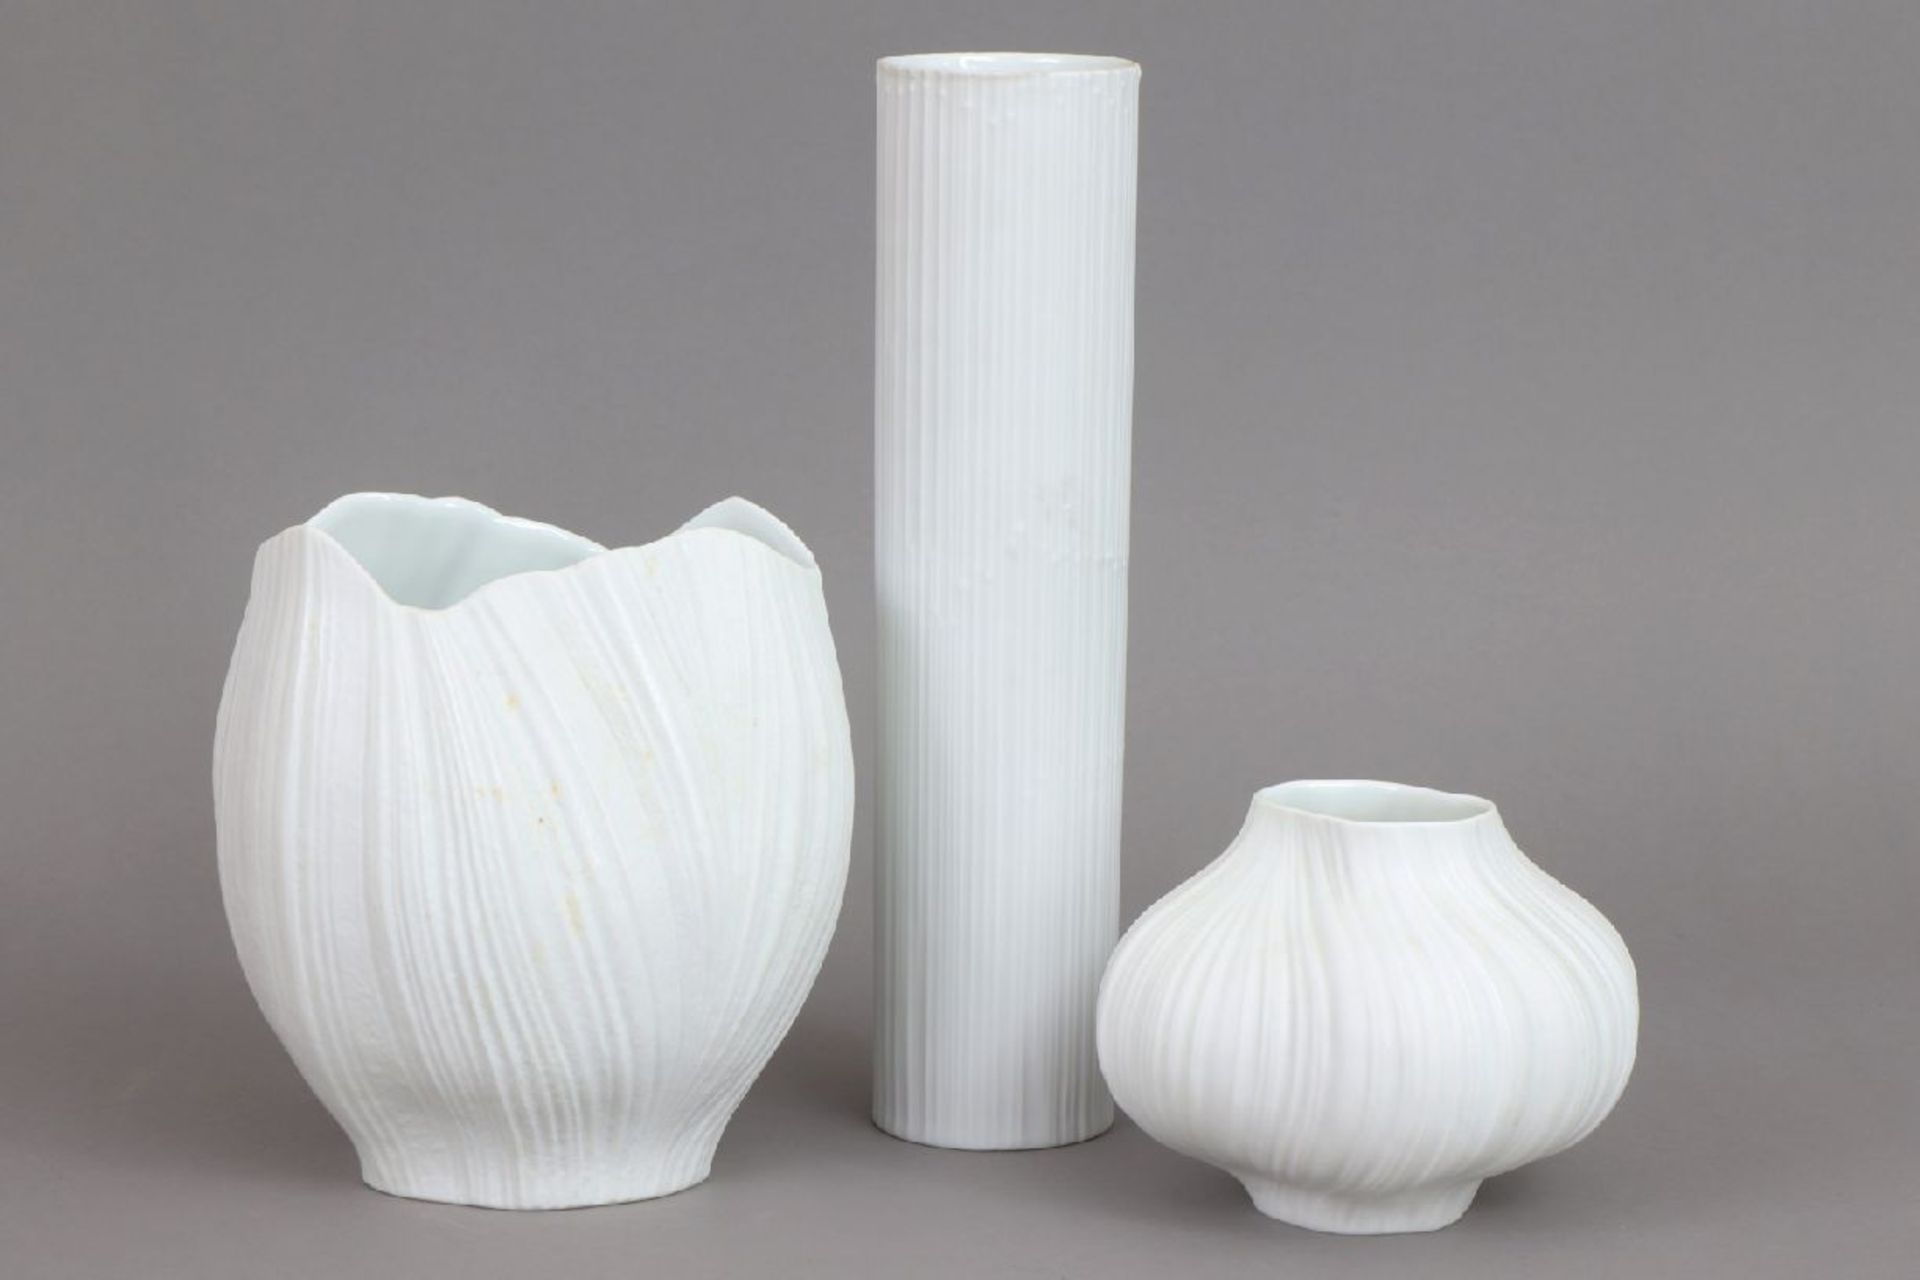 3 ROSENTHAL Vasen2. Hälfte 20. Jahrhunderts, Entwurf u.a. MARTIN FREYER (1909-1974), weißes